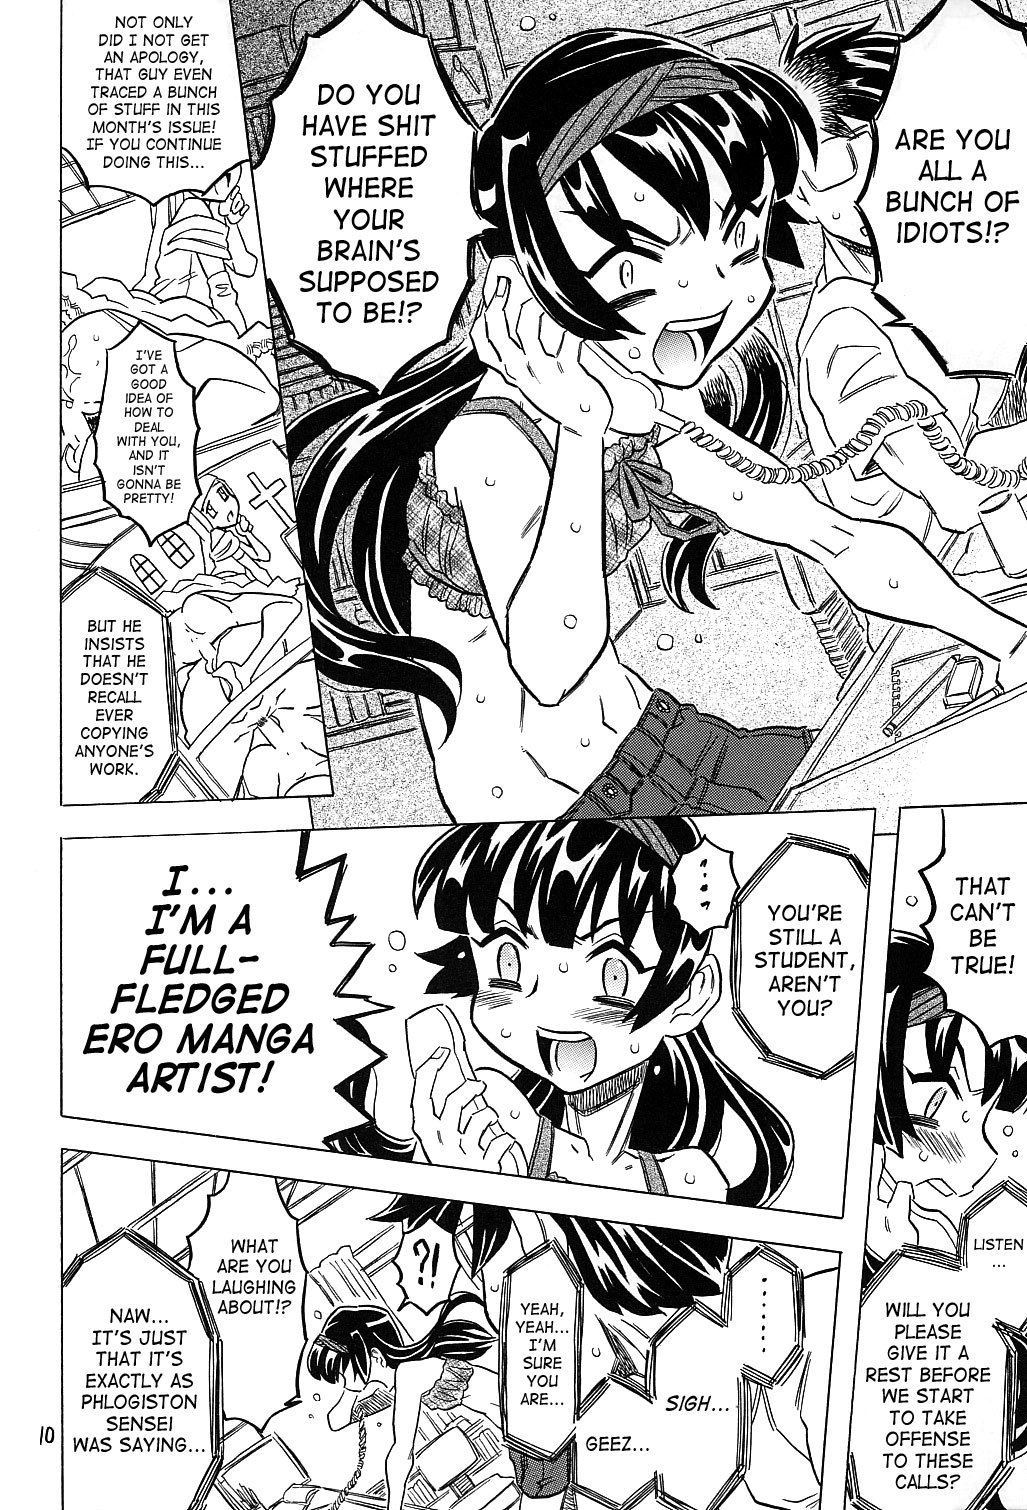 Female Ero Manga Artist Scorned 8 hentai manga